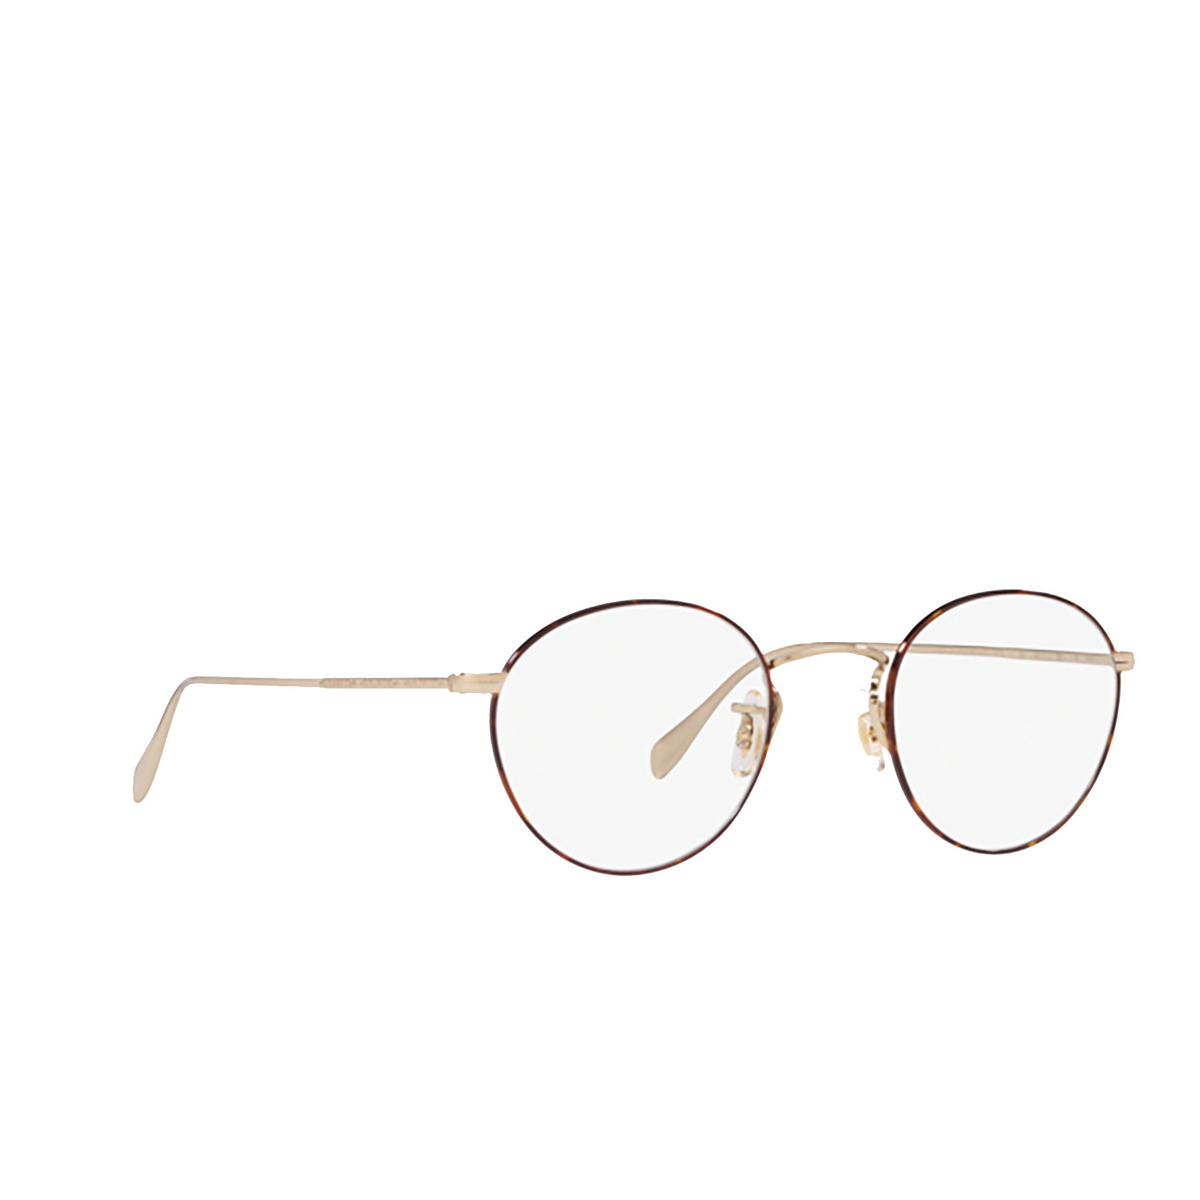 Oliver Peoples® Round Eyeglasses: Coleridge OV1186 color Soft Gold / Amber Dtbk Foil 5295 - three-quarters view.